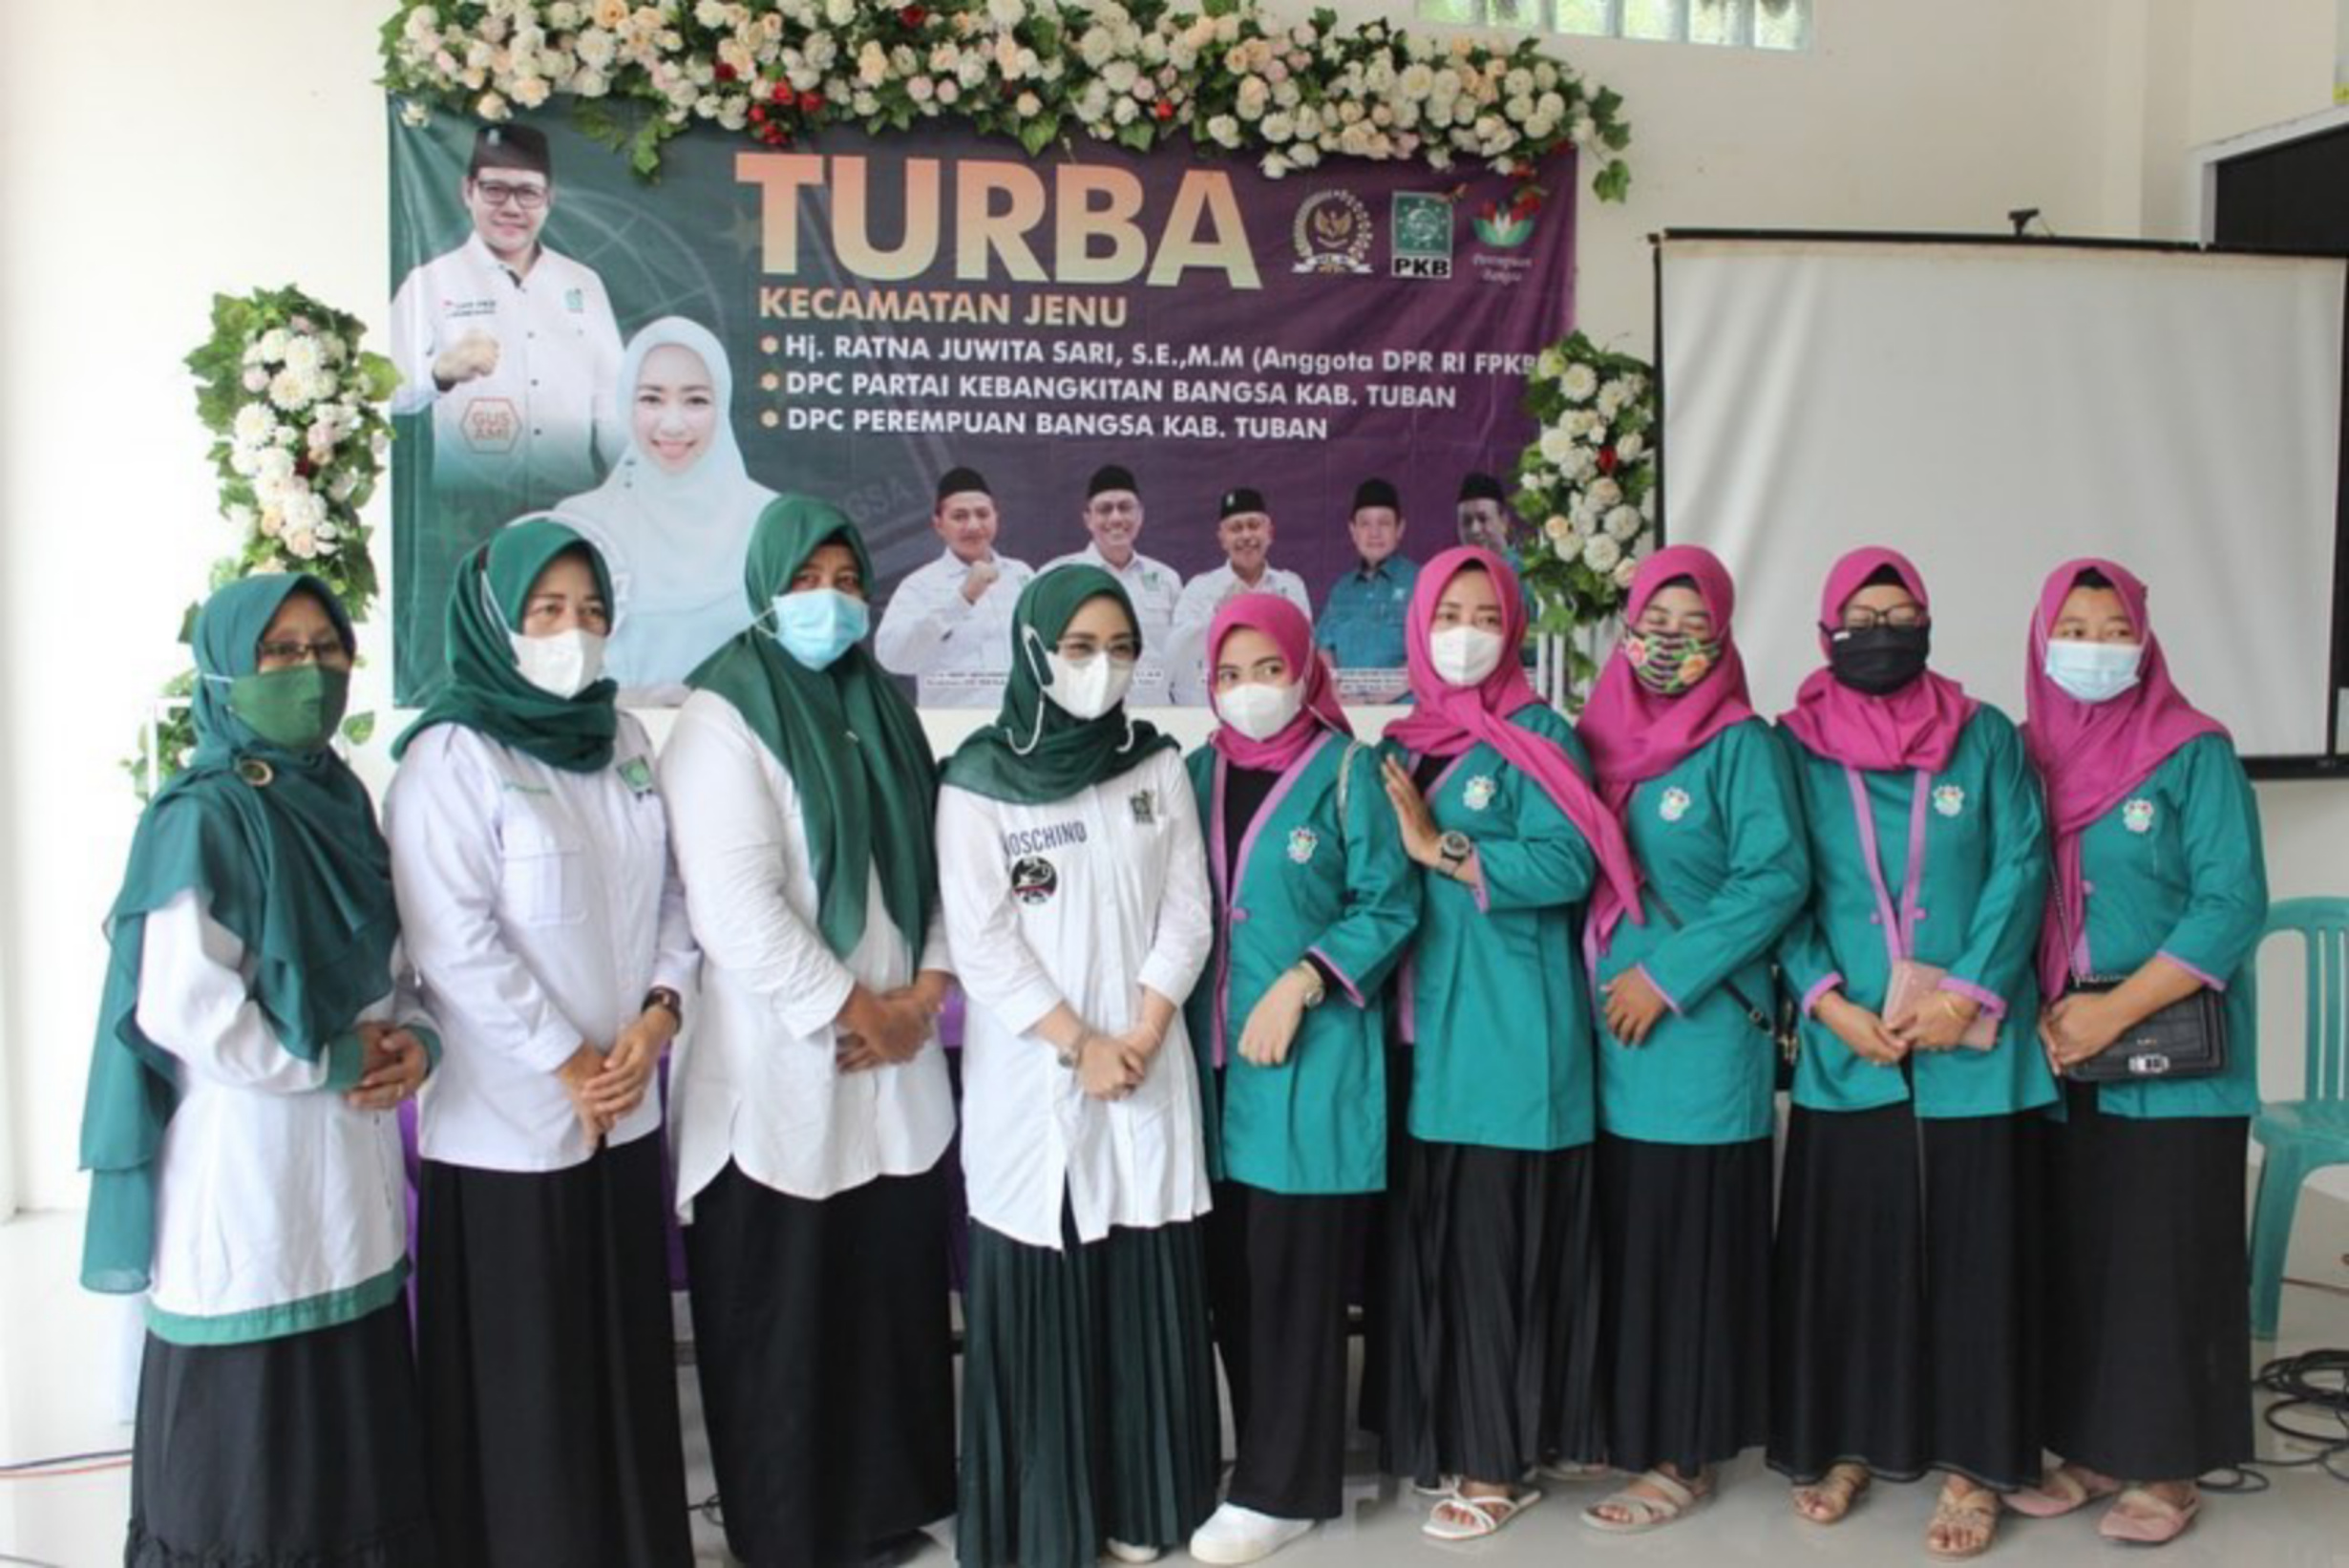 Bersama DPC Perempuan dan PKB, Ratna Juwita Sari Turba ke 20 Kecamatan